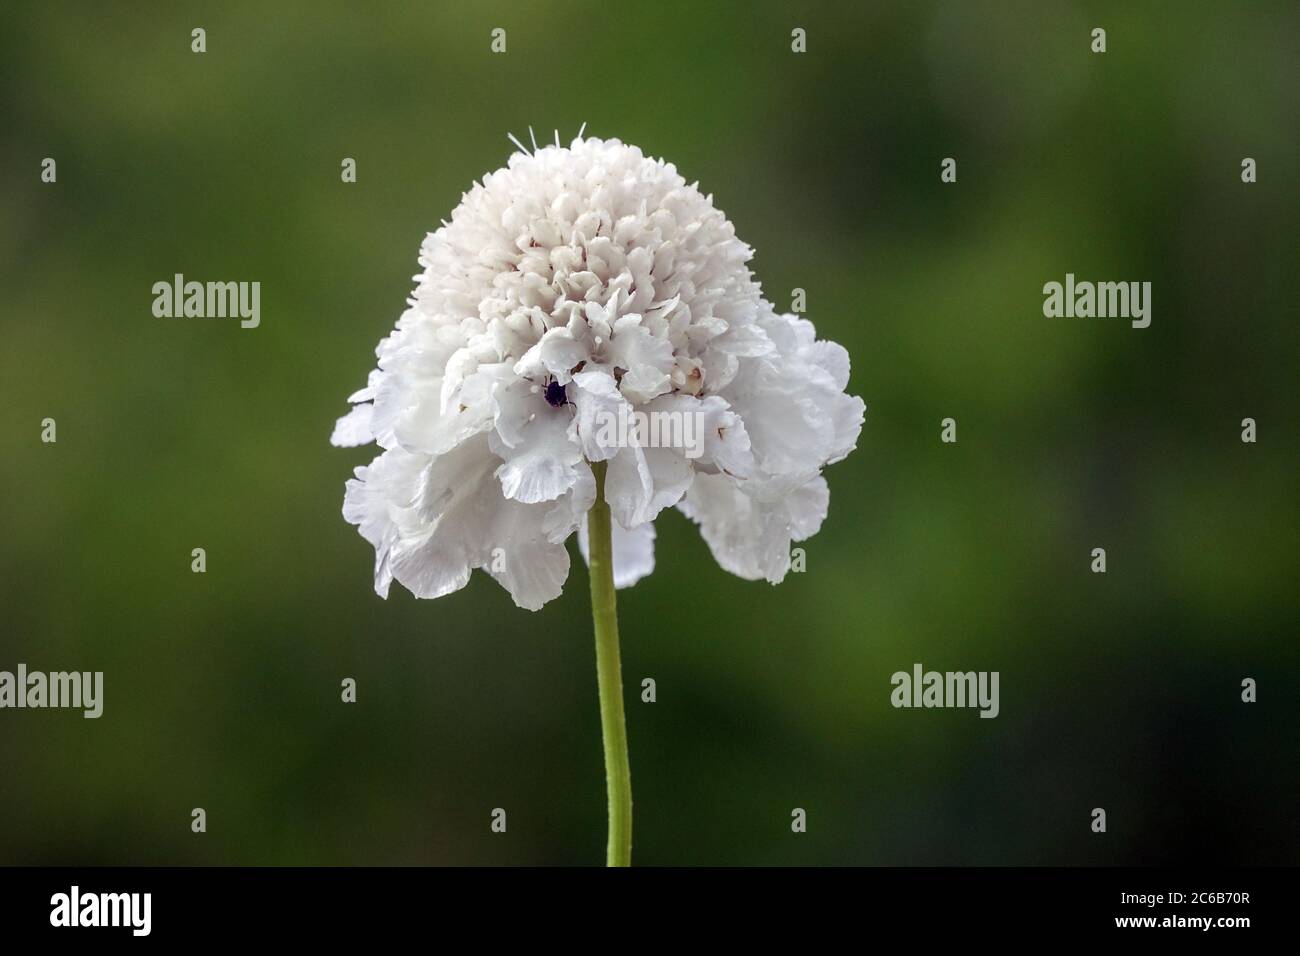 White Cephalaria gigantea 'Alba' Giant Scabious flower Stock Photo